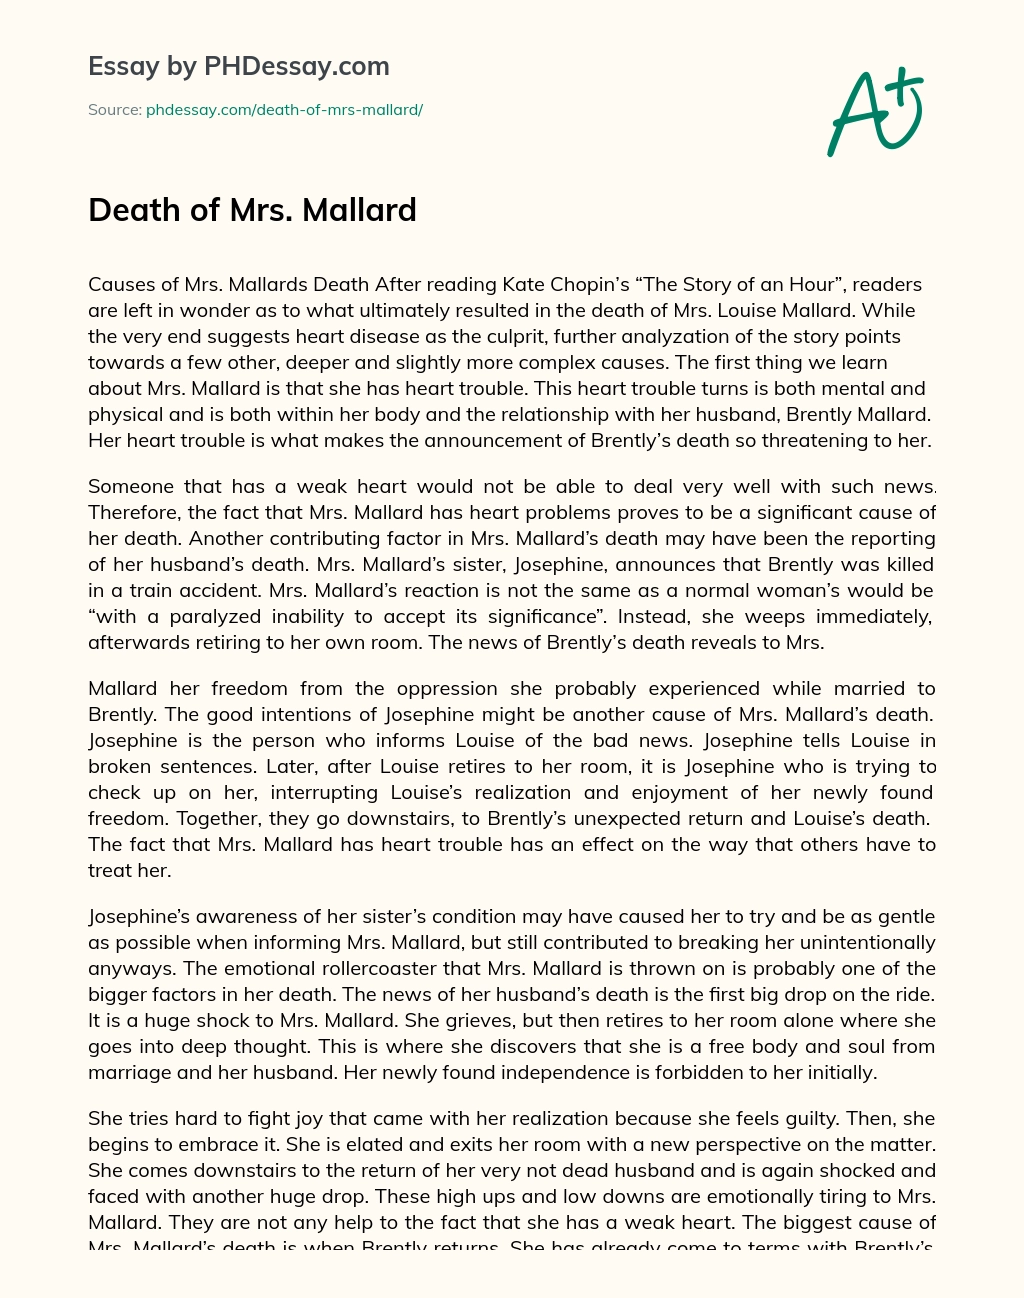 Death of Mrs. Mallard essay